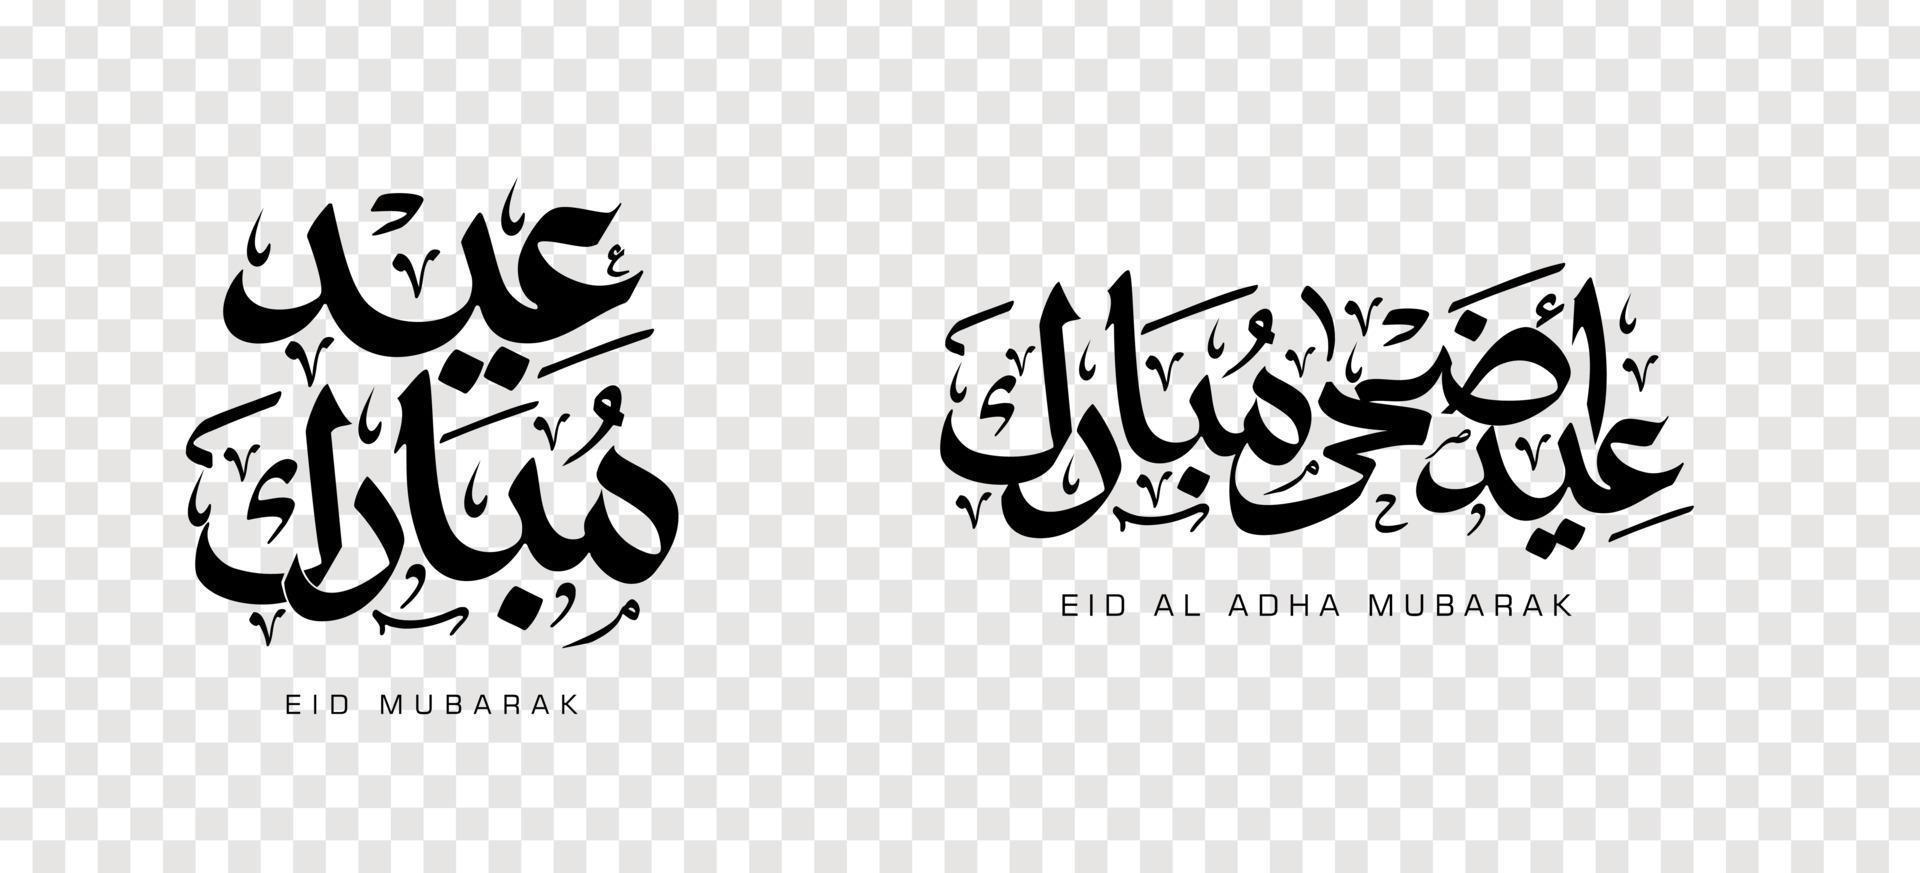 set di eid adha mubarak in calligrafia araba, elemento di design. illustrazione vettoriale